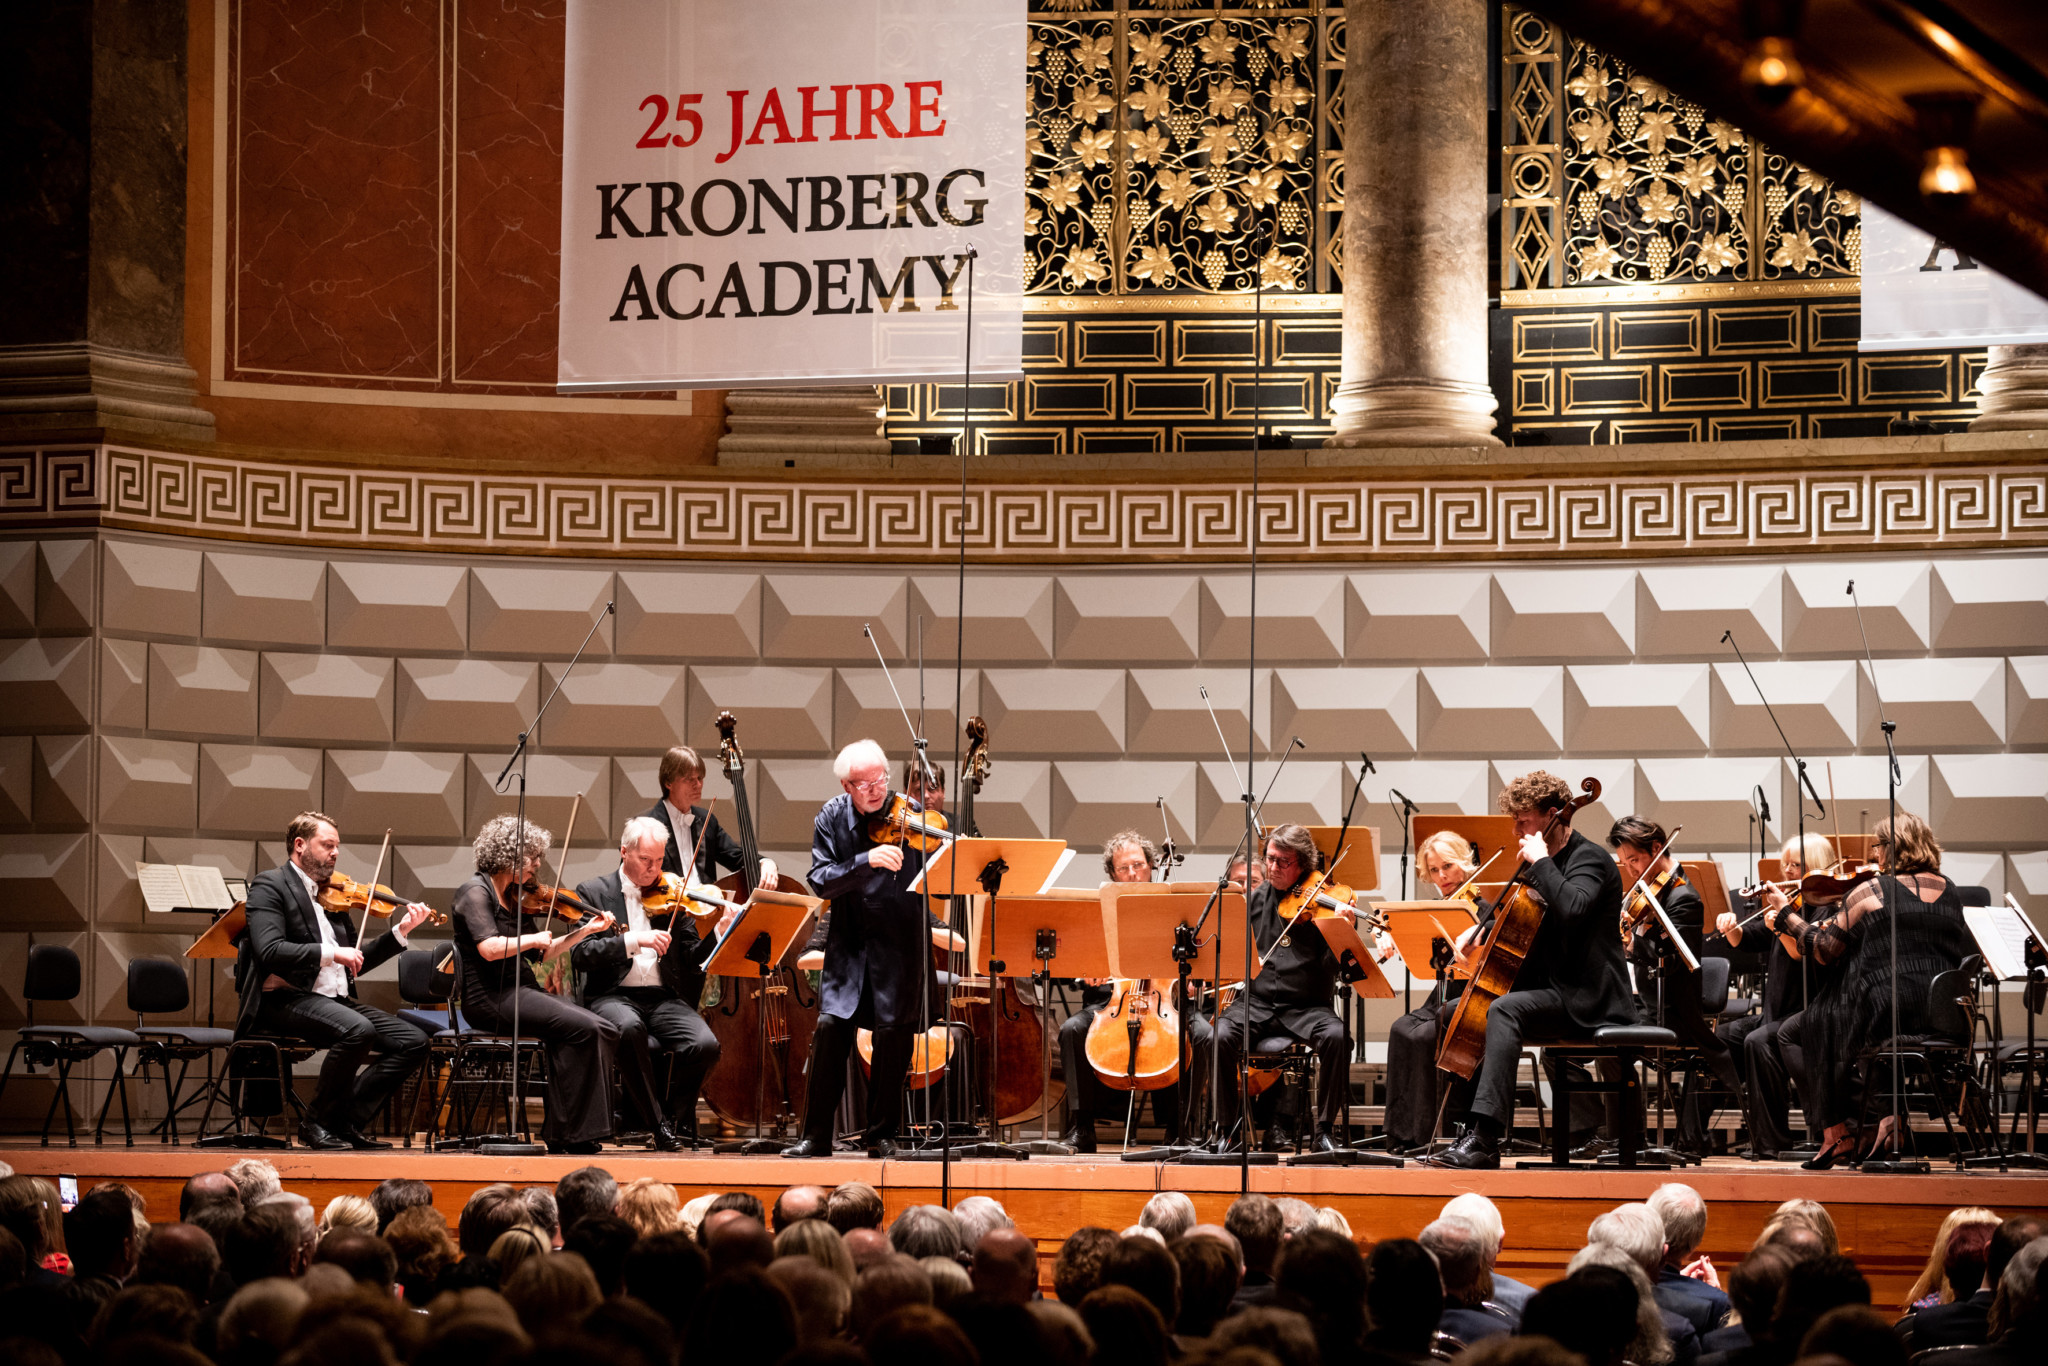 25 Jahre Kronberg Academy, Jubiläumskonzert mit Gidon Kremer